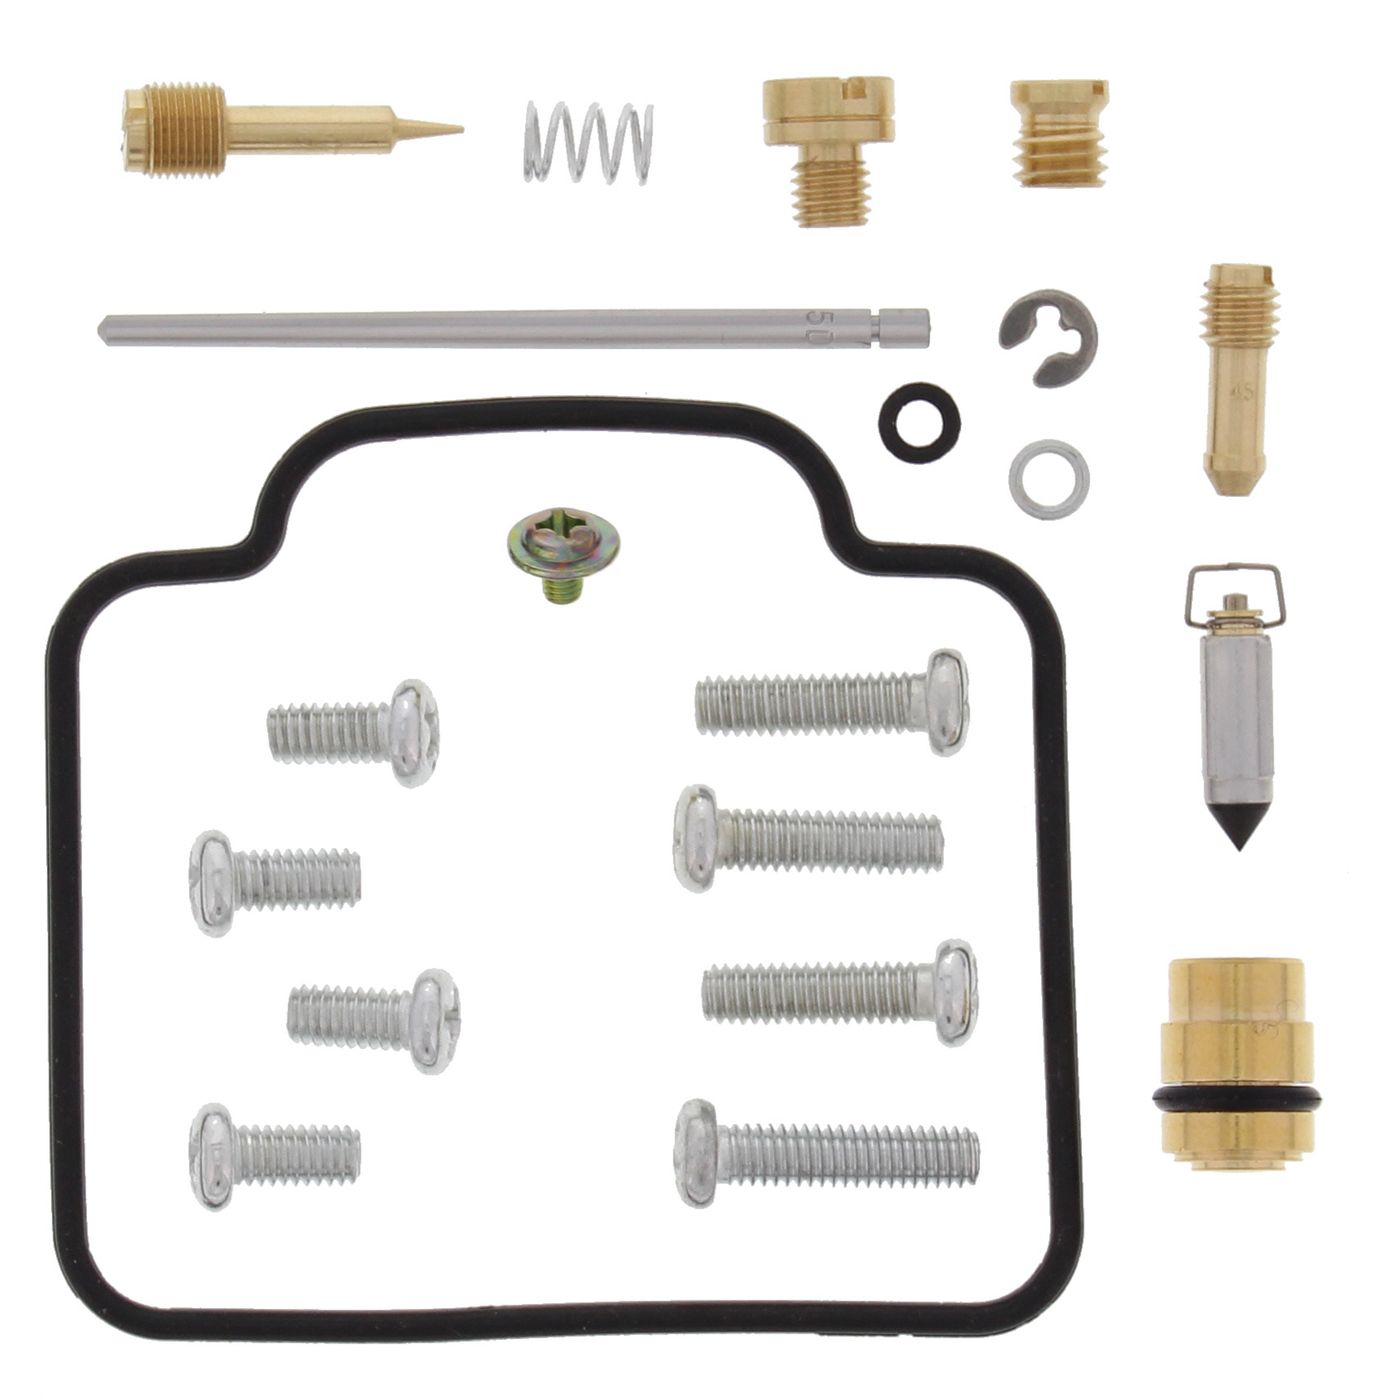 Wrp Carb Repair Kits - WRP261128 image